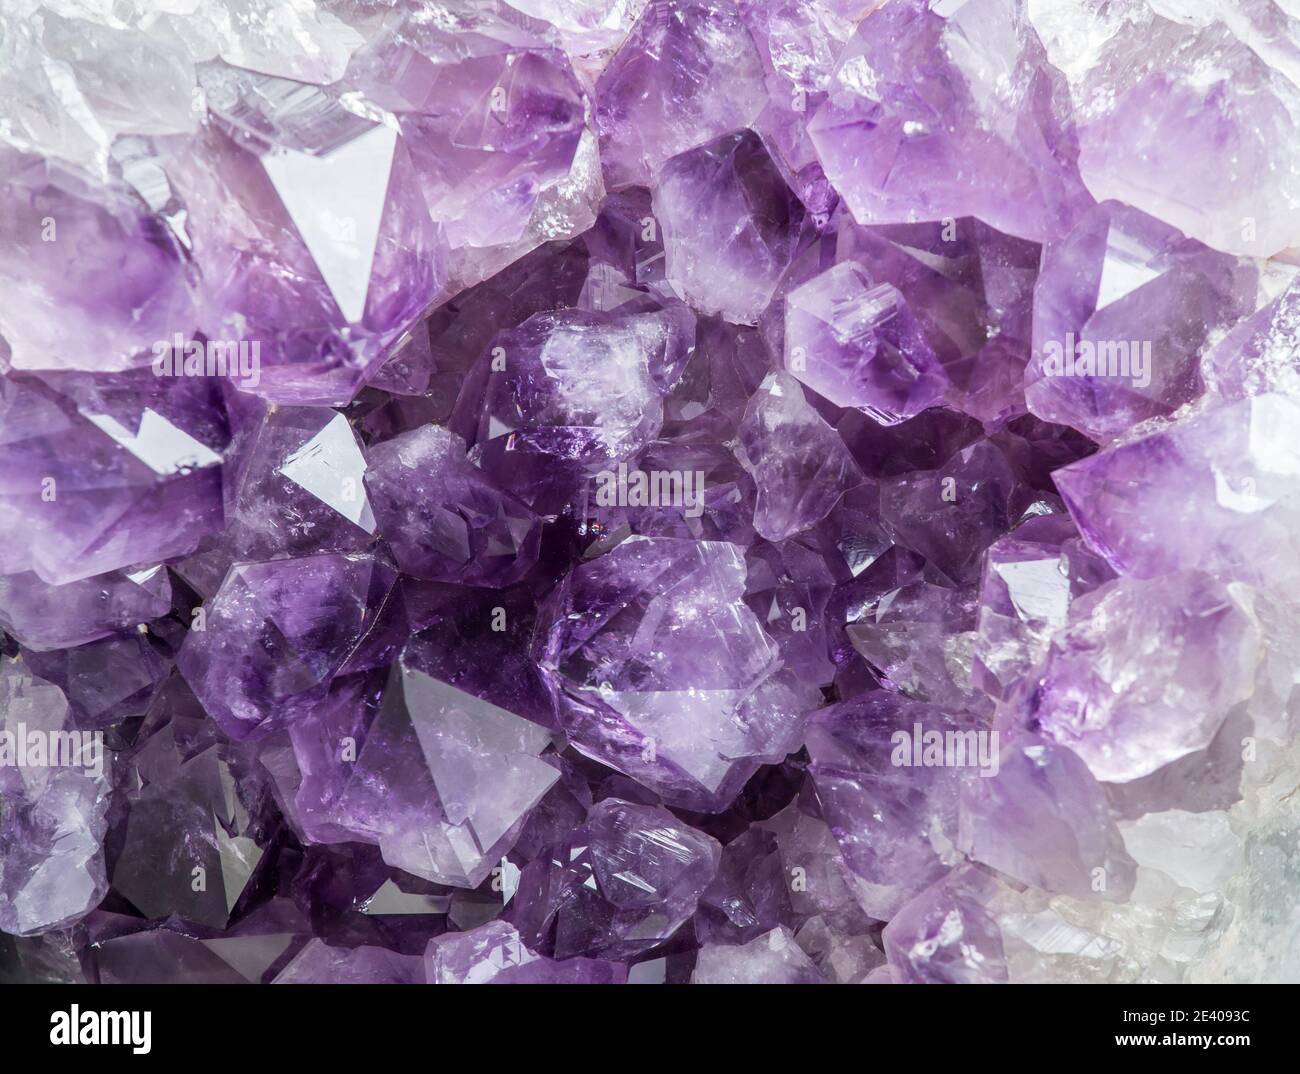 Vue rapprochée du grand amas de cristaux d'améthyste violet. Concept d'arrière-plan magique ésotérique. Banque D'Images